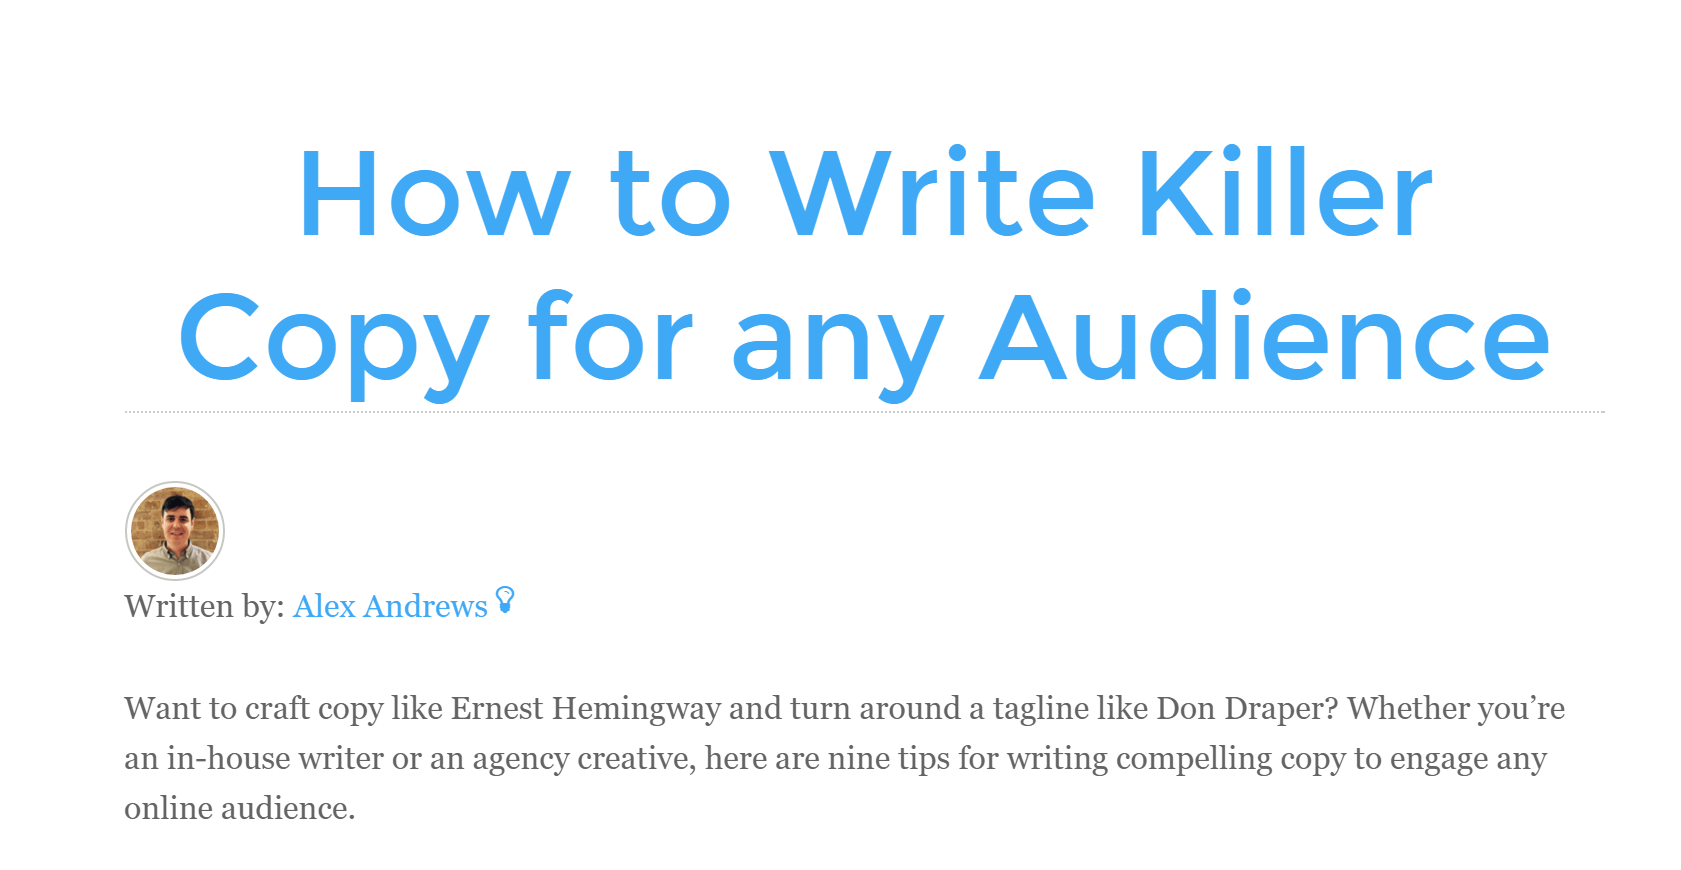 How to write killer copy